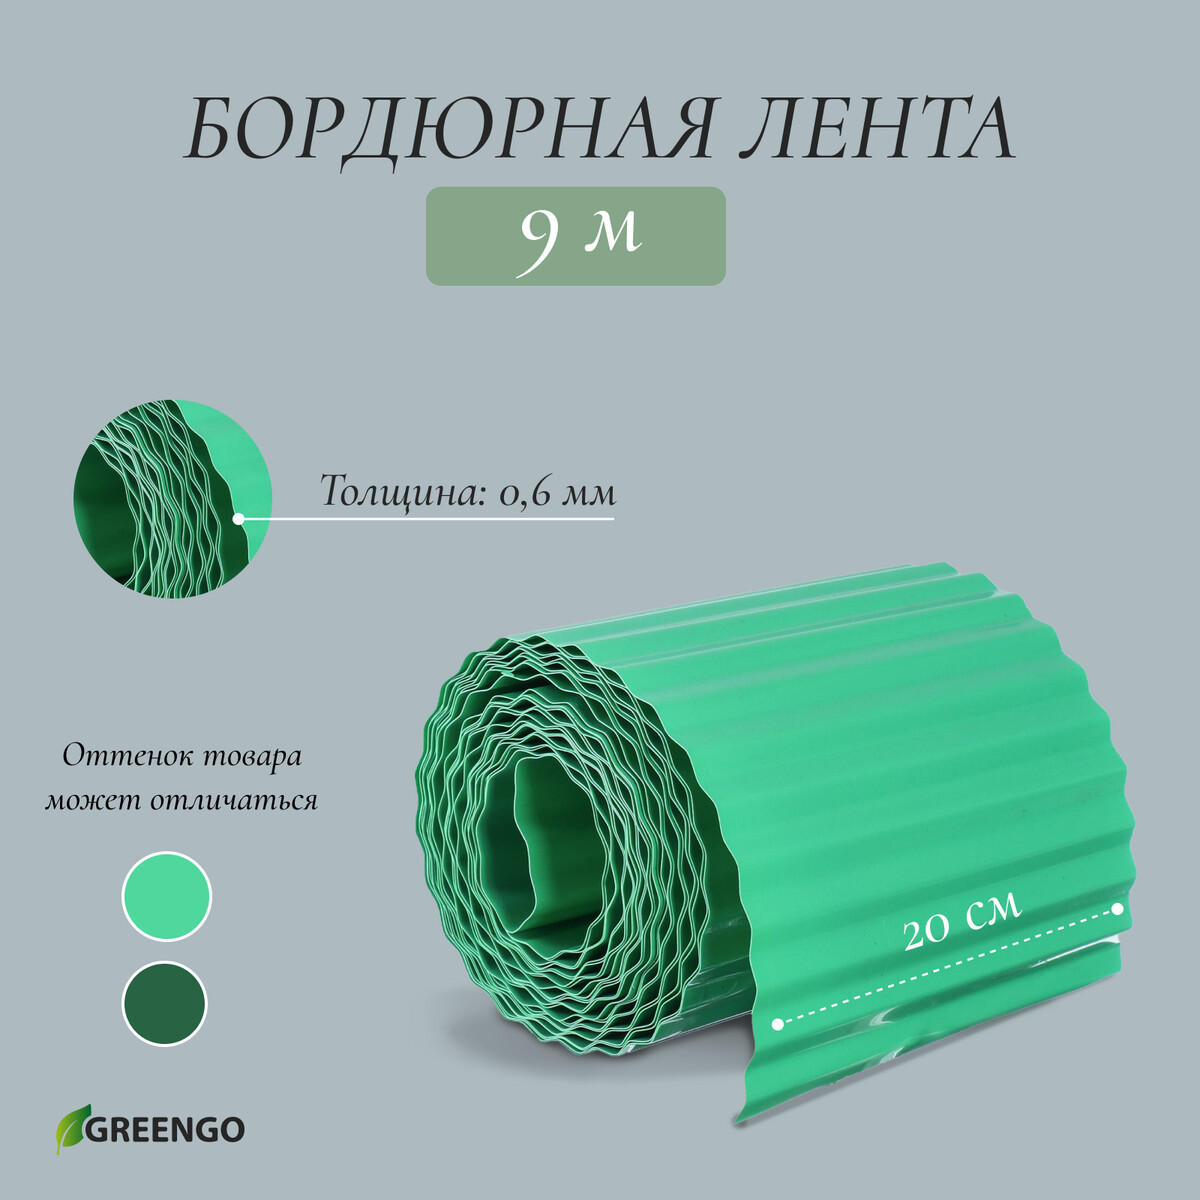 Лента бордюрная, 0.2 × 9 м, толщина 0.6 мм, пластиковая, гофра, зеленая, greengo лента бордюрная 0 15 × 9 м толщина 1 2 мм пластиковая фигурная зеленая